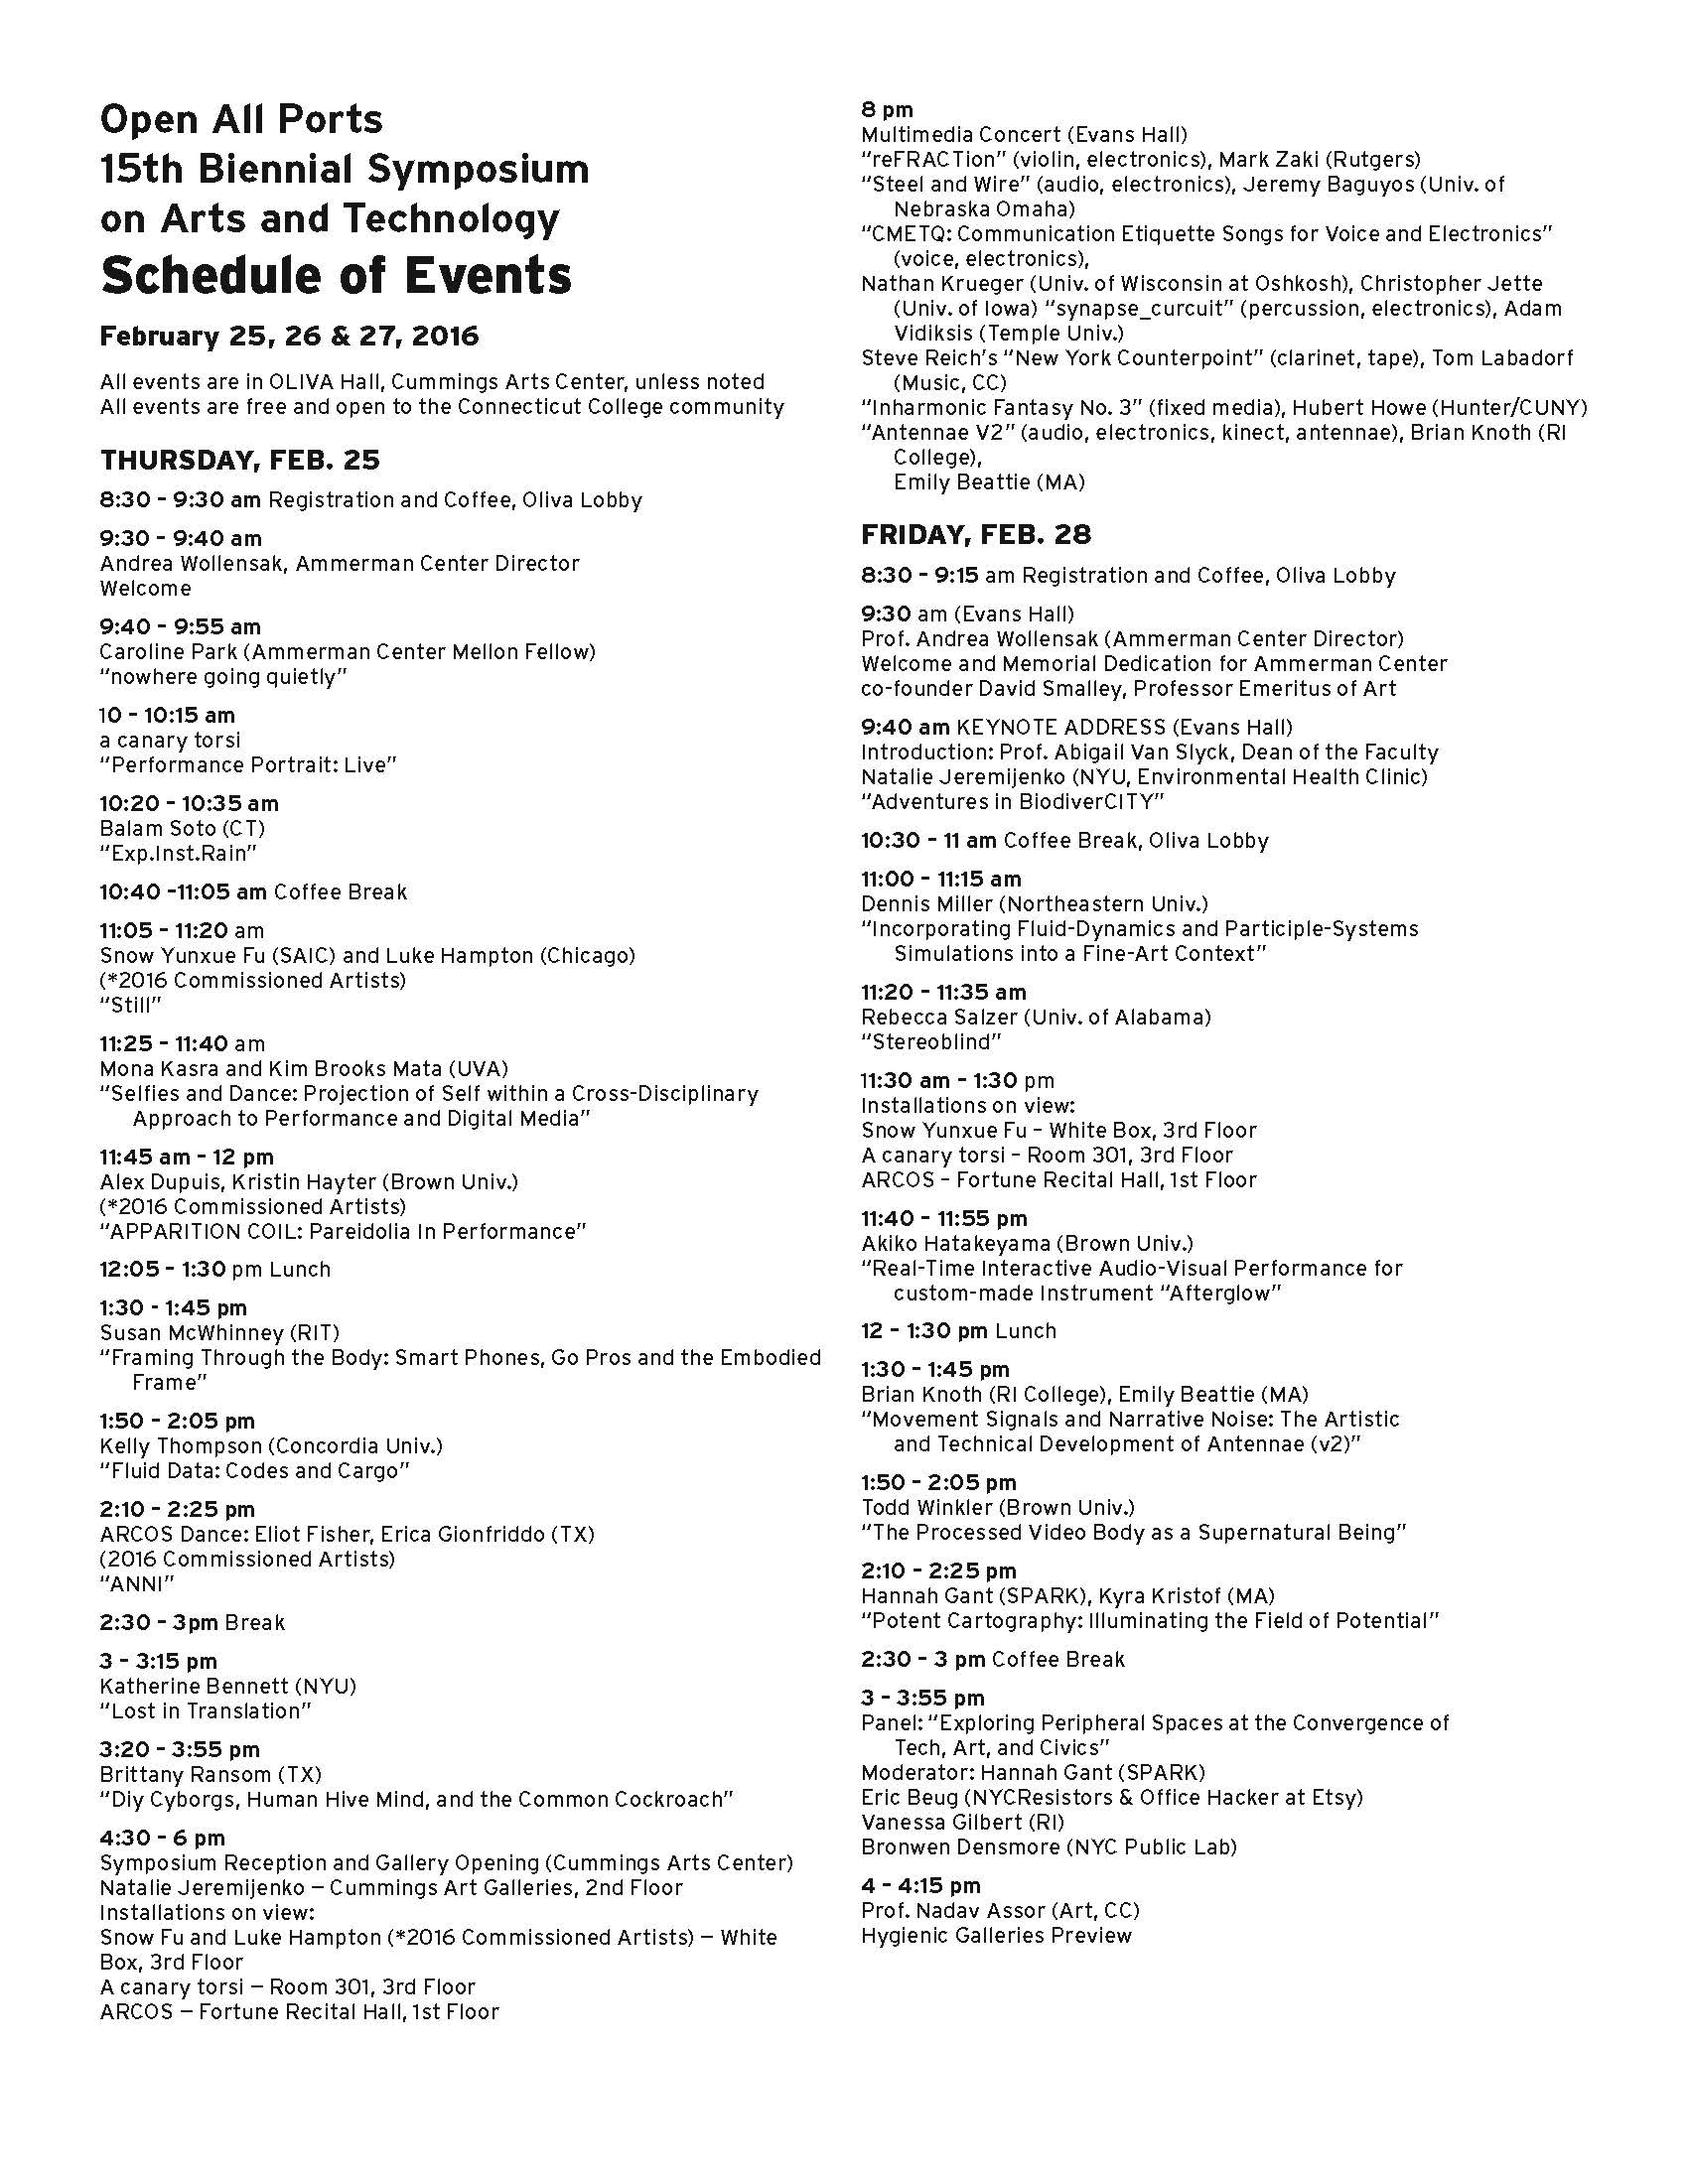 Symposium 2016 Schedule